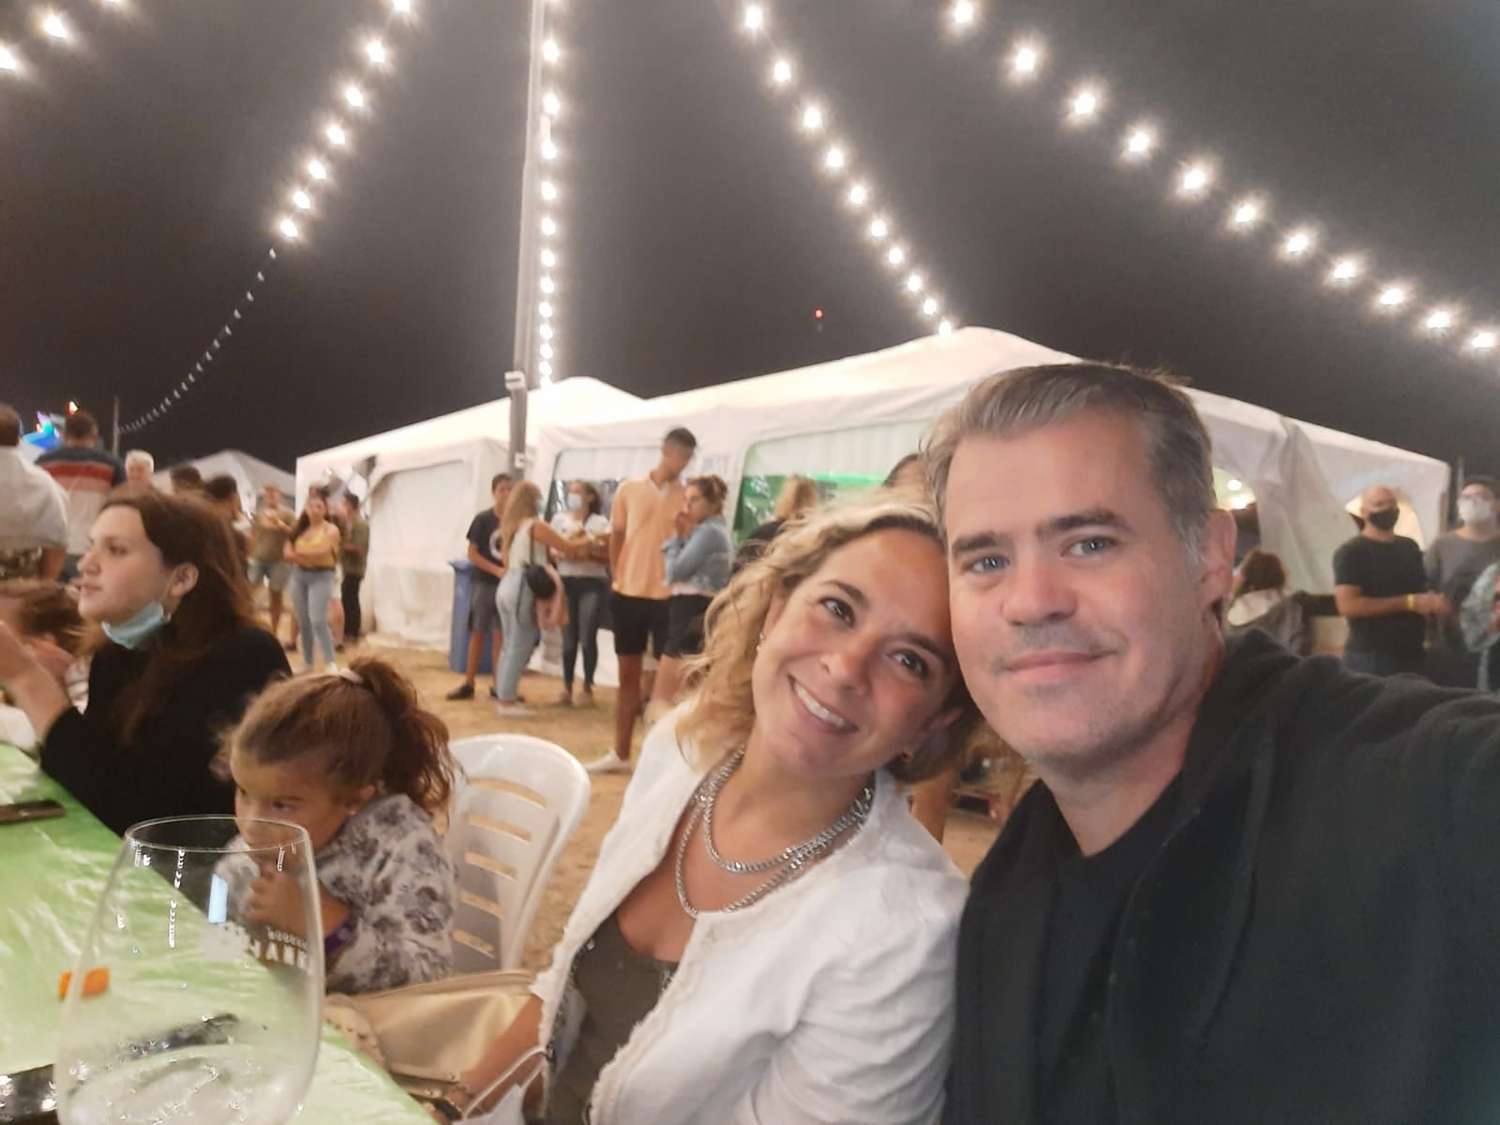 "Noche soñada": La selfie del Intendente Piaggio en la Fiesta del Pescado y el Vino